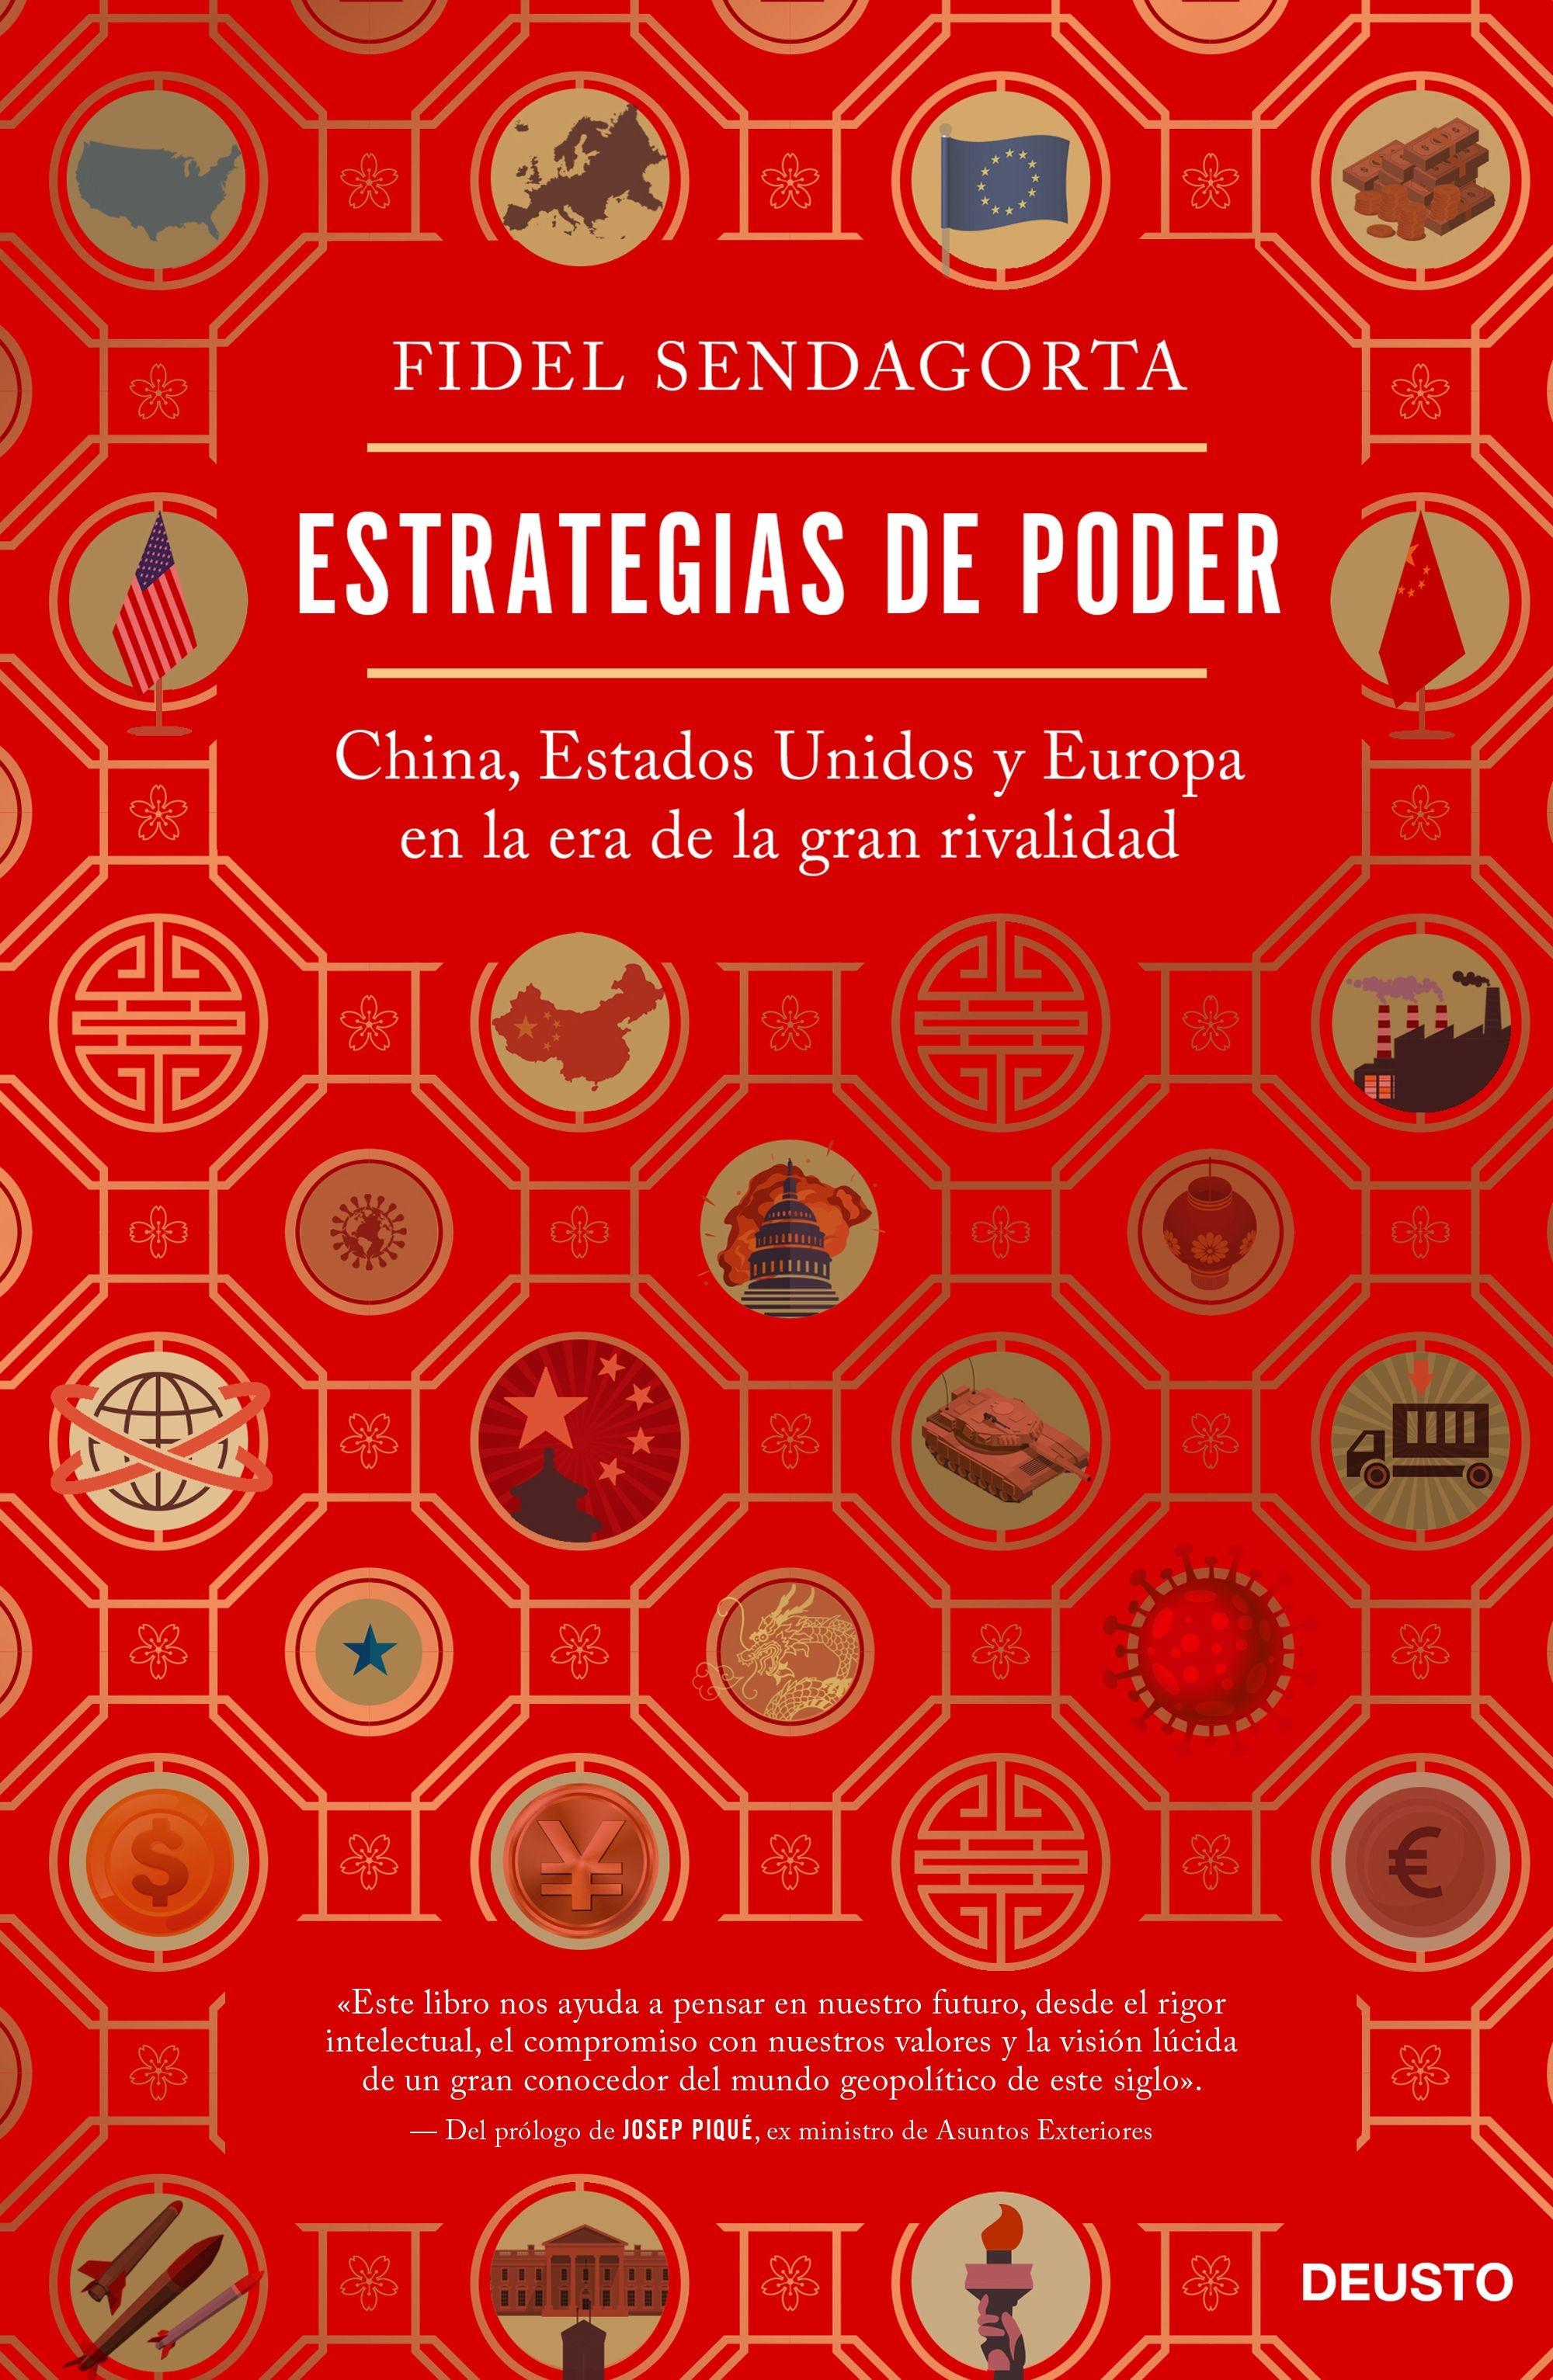 ESTRATEGIAS DE PODER "China, Estados Unidos y Europa en la era de la gran rivalidad". 